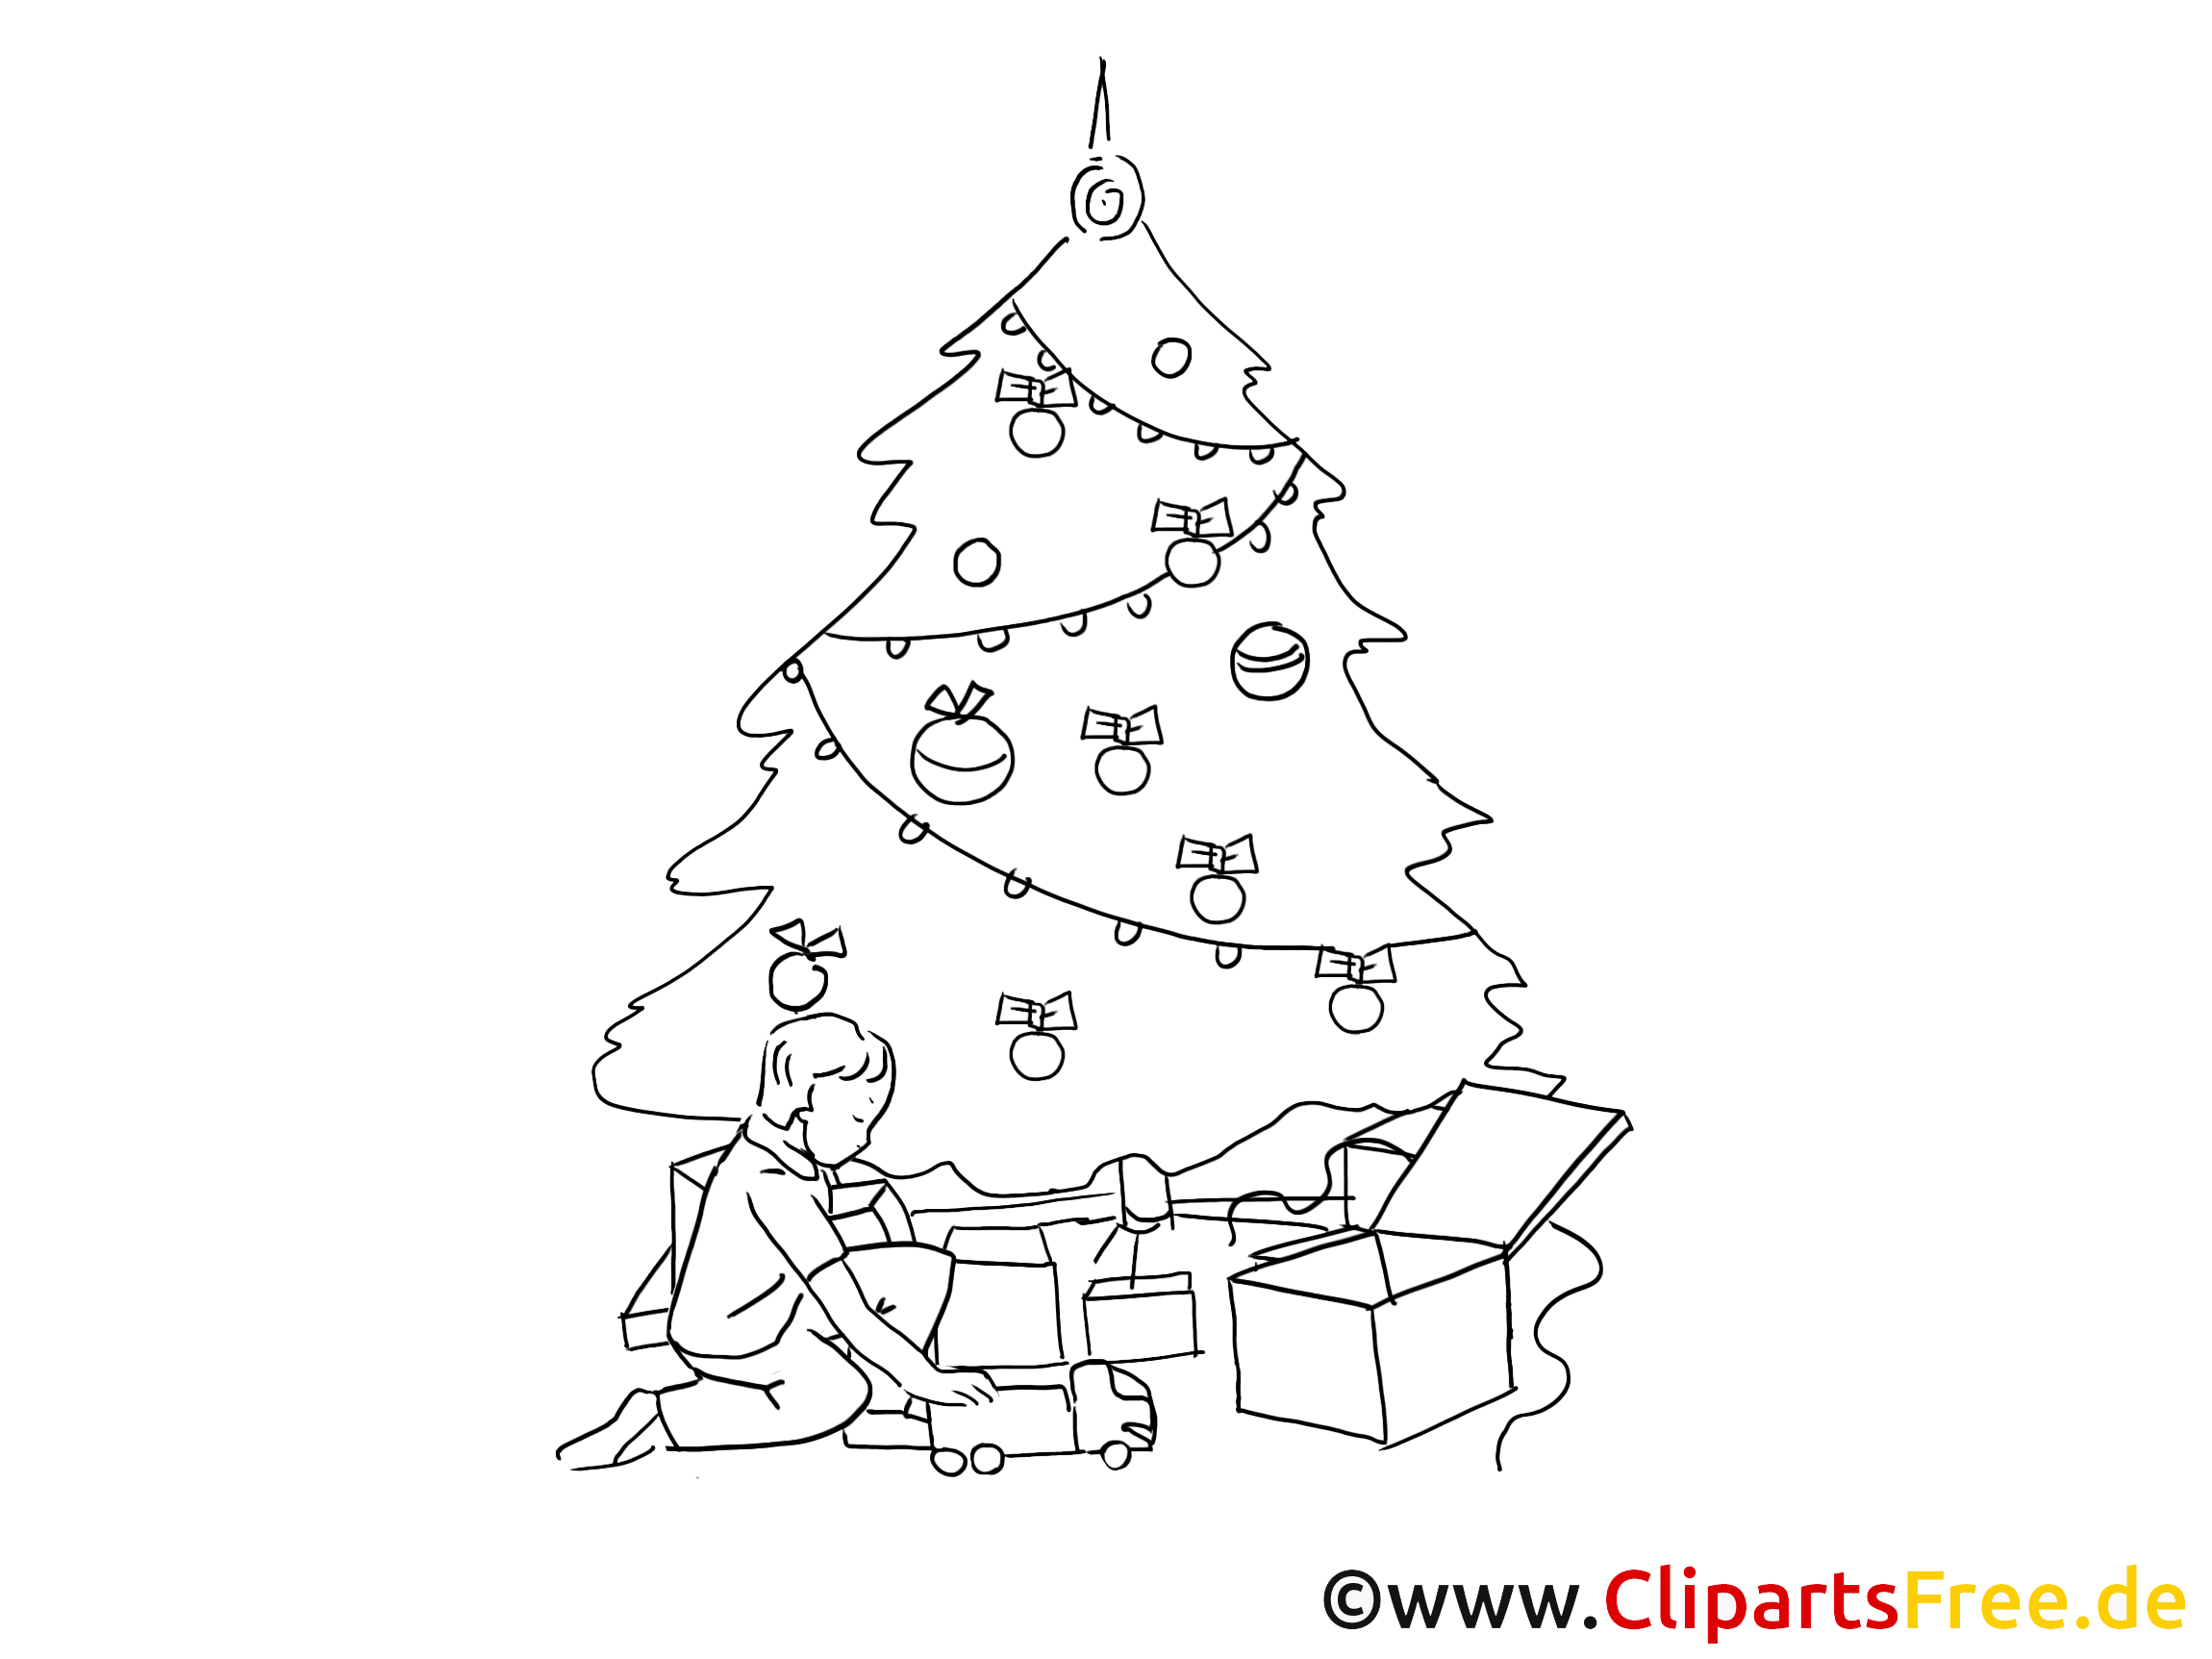 cliparts weihnachten gratis - photo #23